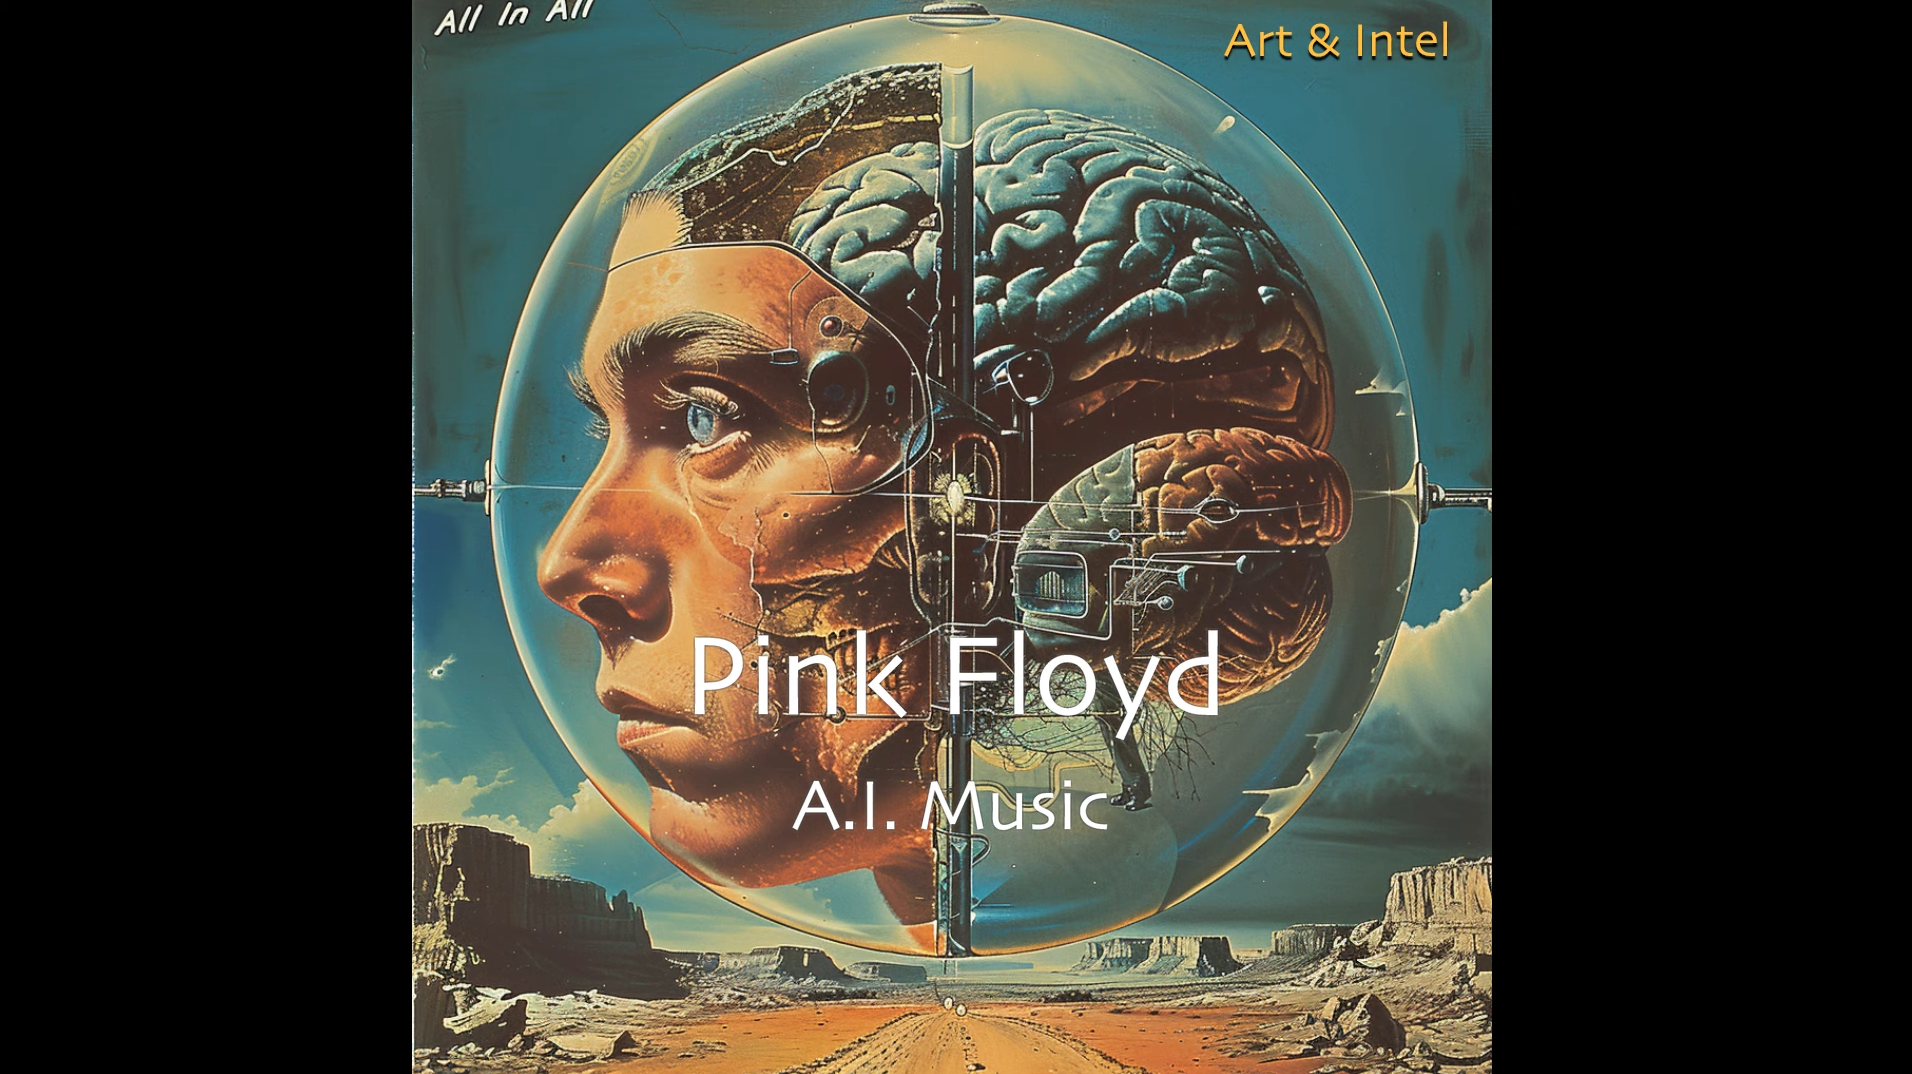 O “novo” álbum do Pink Floyd: All In All